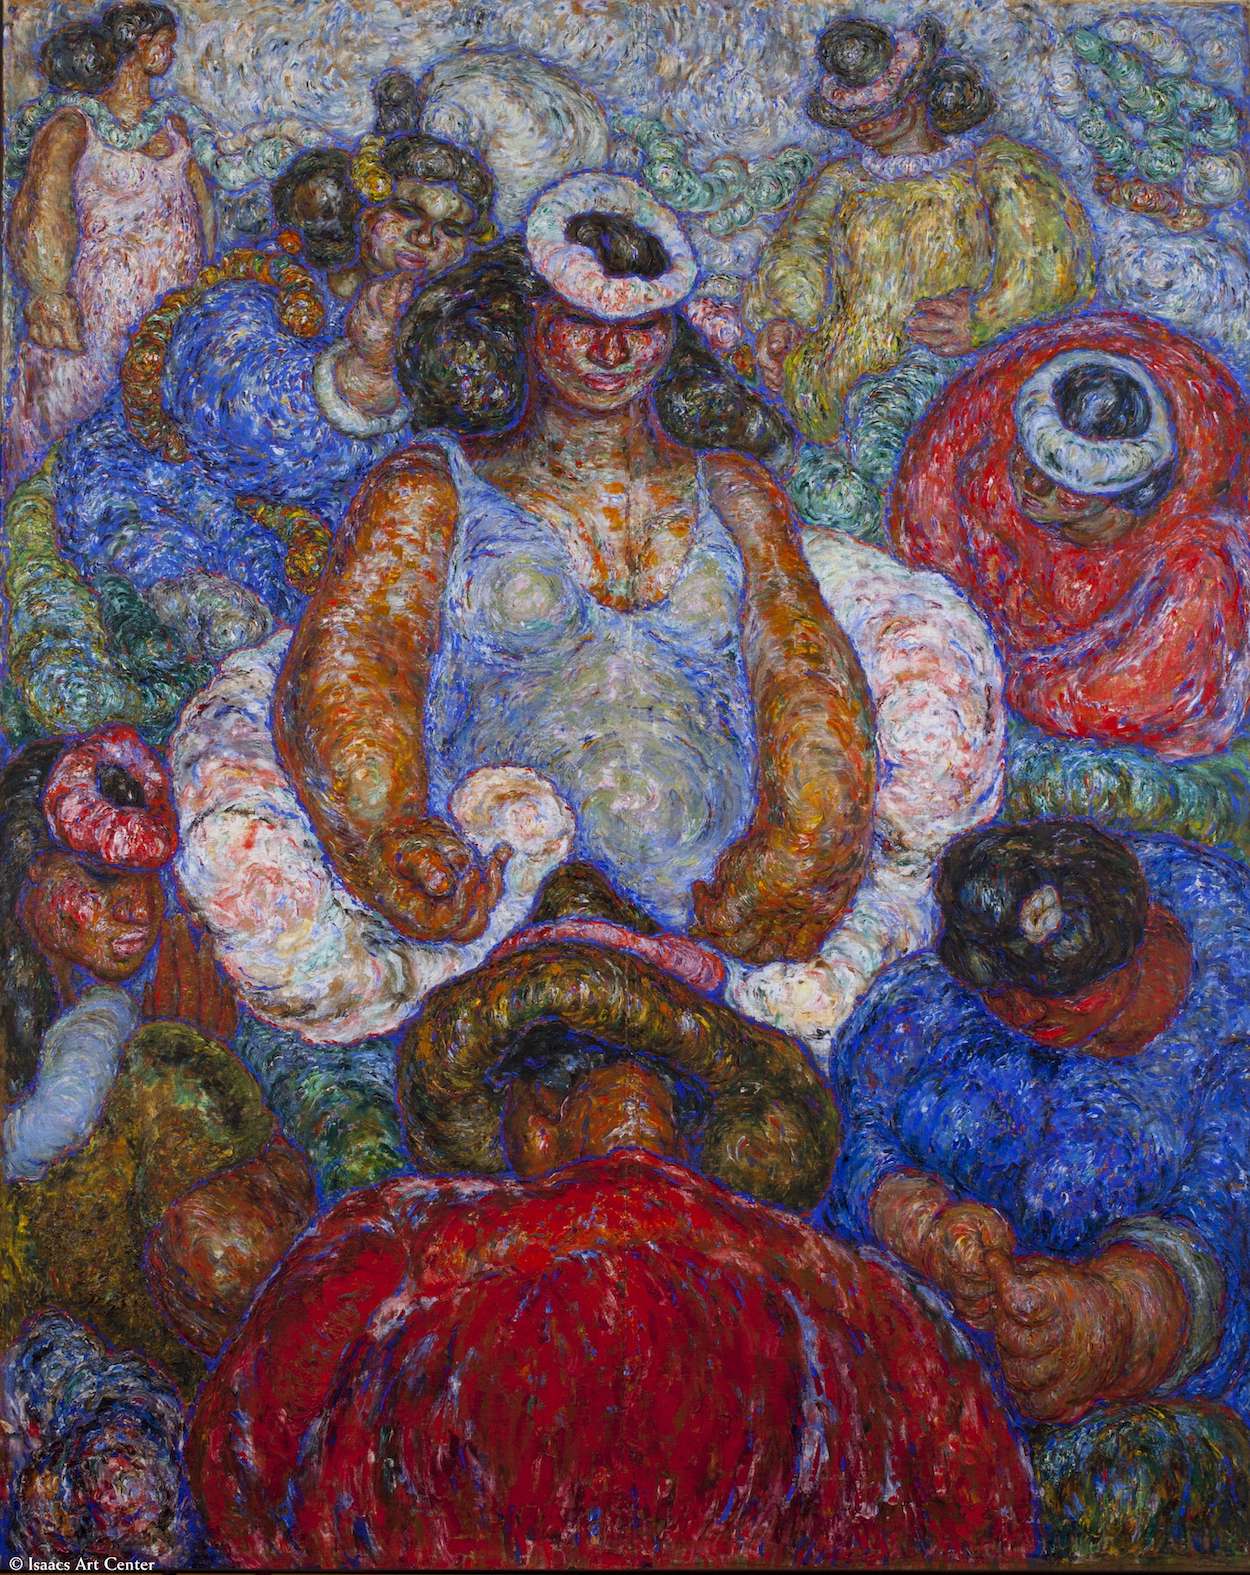 Lei Reina Fantasia by Madge Tennent - 1934 - 244 x 198 cm Isaacs Art Center